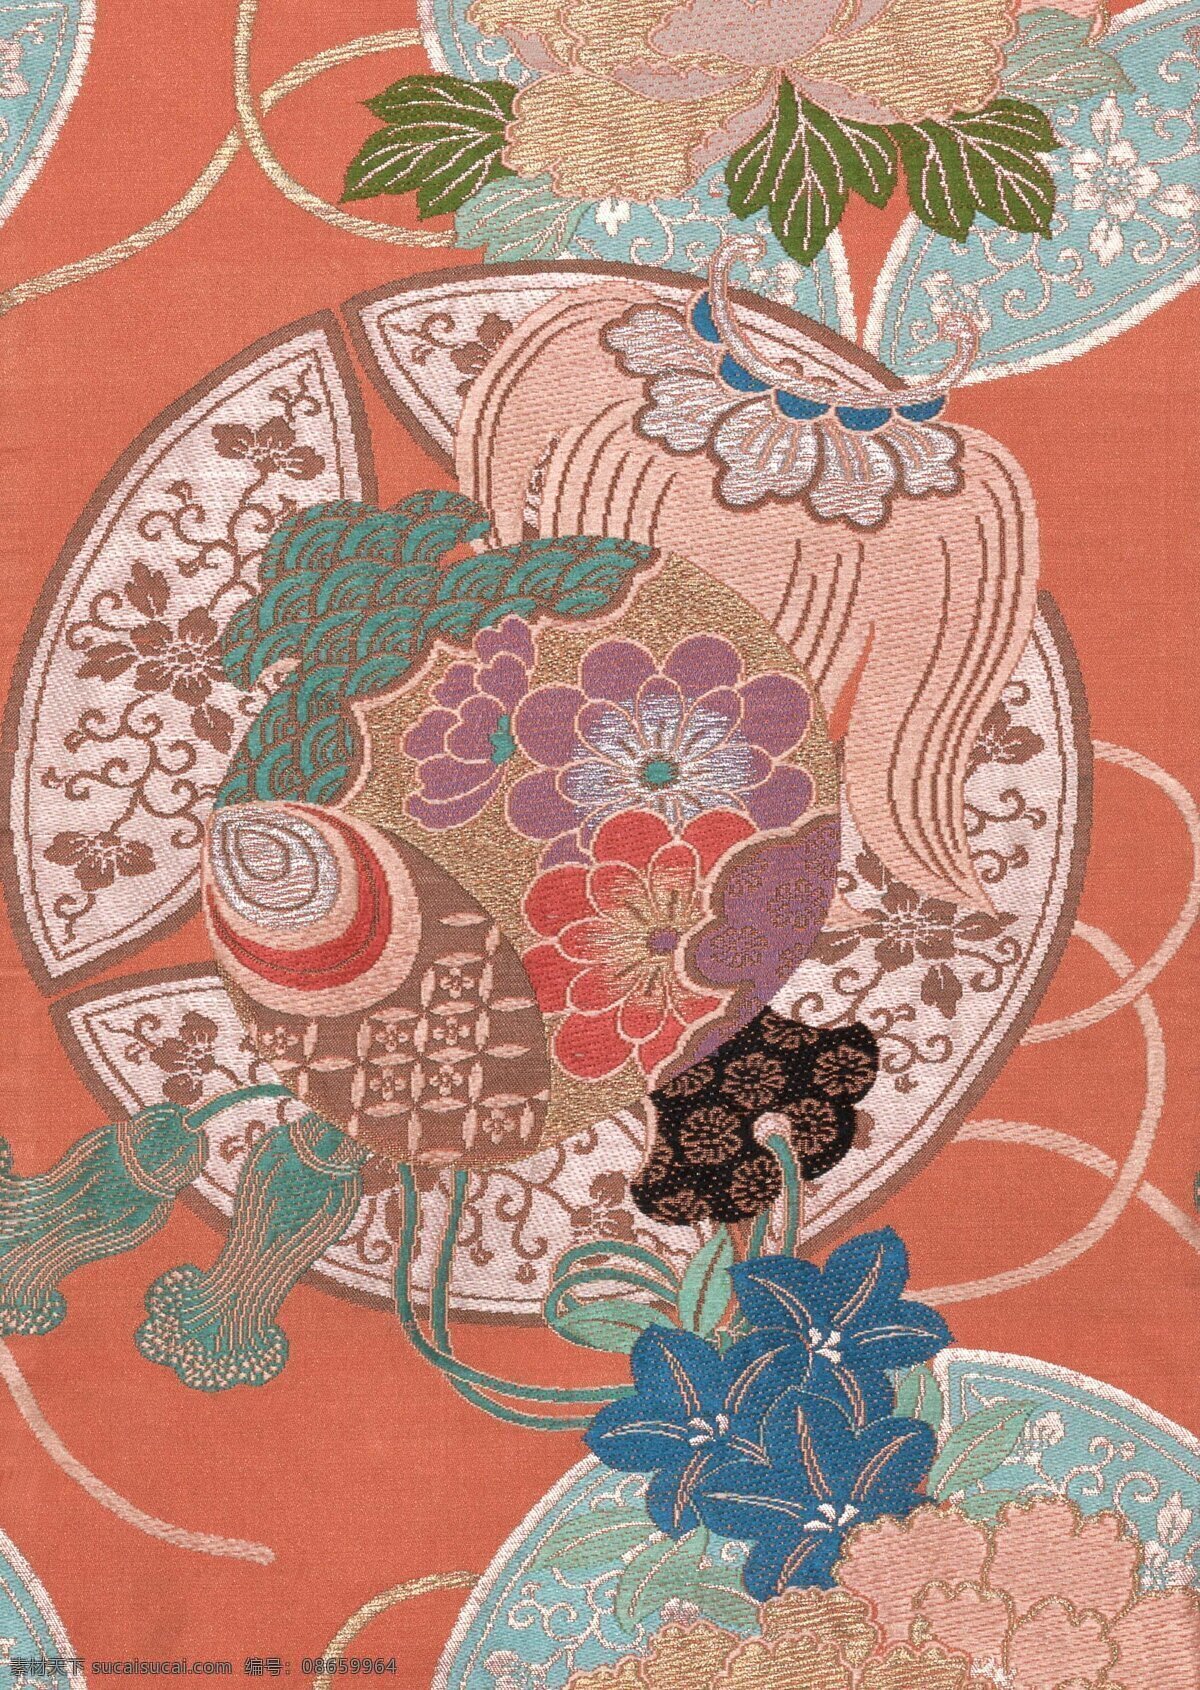 日本 底纹 花样 特色 鲜艳 明丽 背景图片